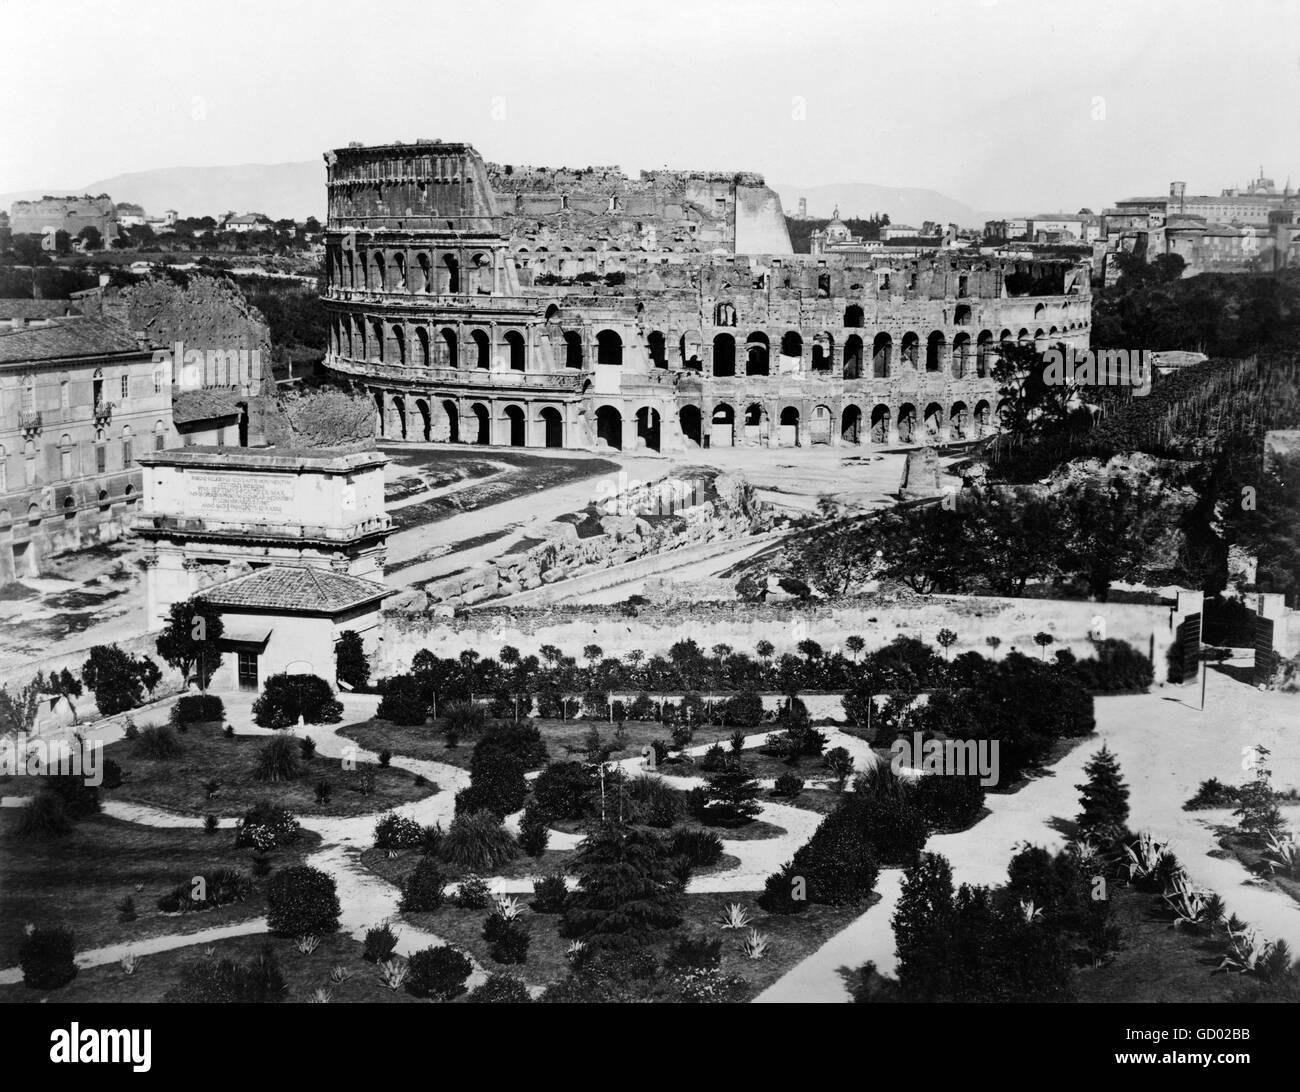 Kolosseum, Rom. 19. Jahrhundert-Blick auf das Kolosseum in Rom. Foto zwischen 1860 und 1890 Stockfoto